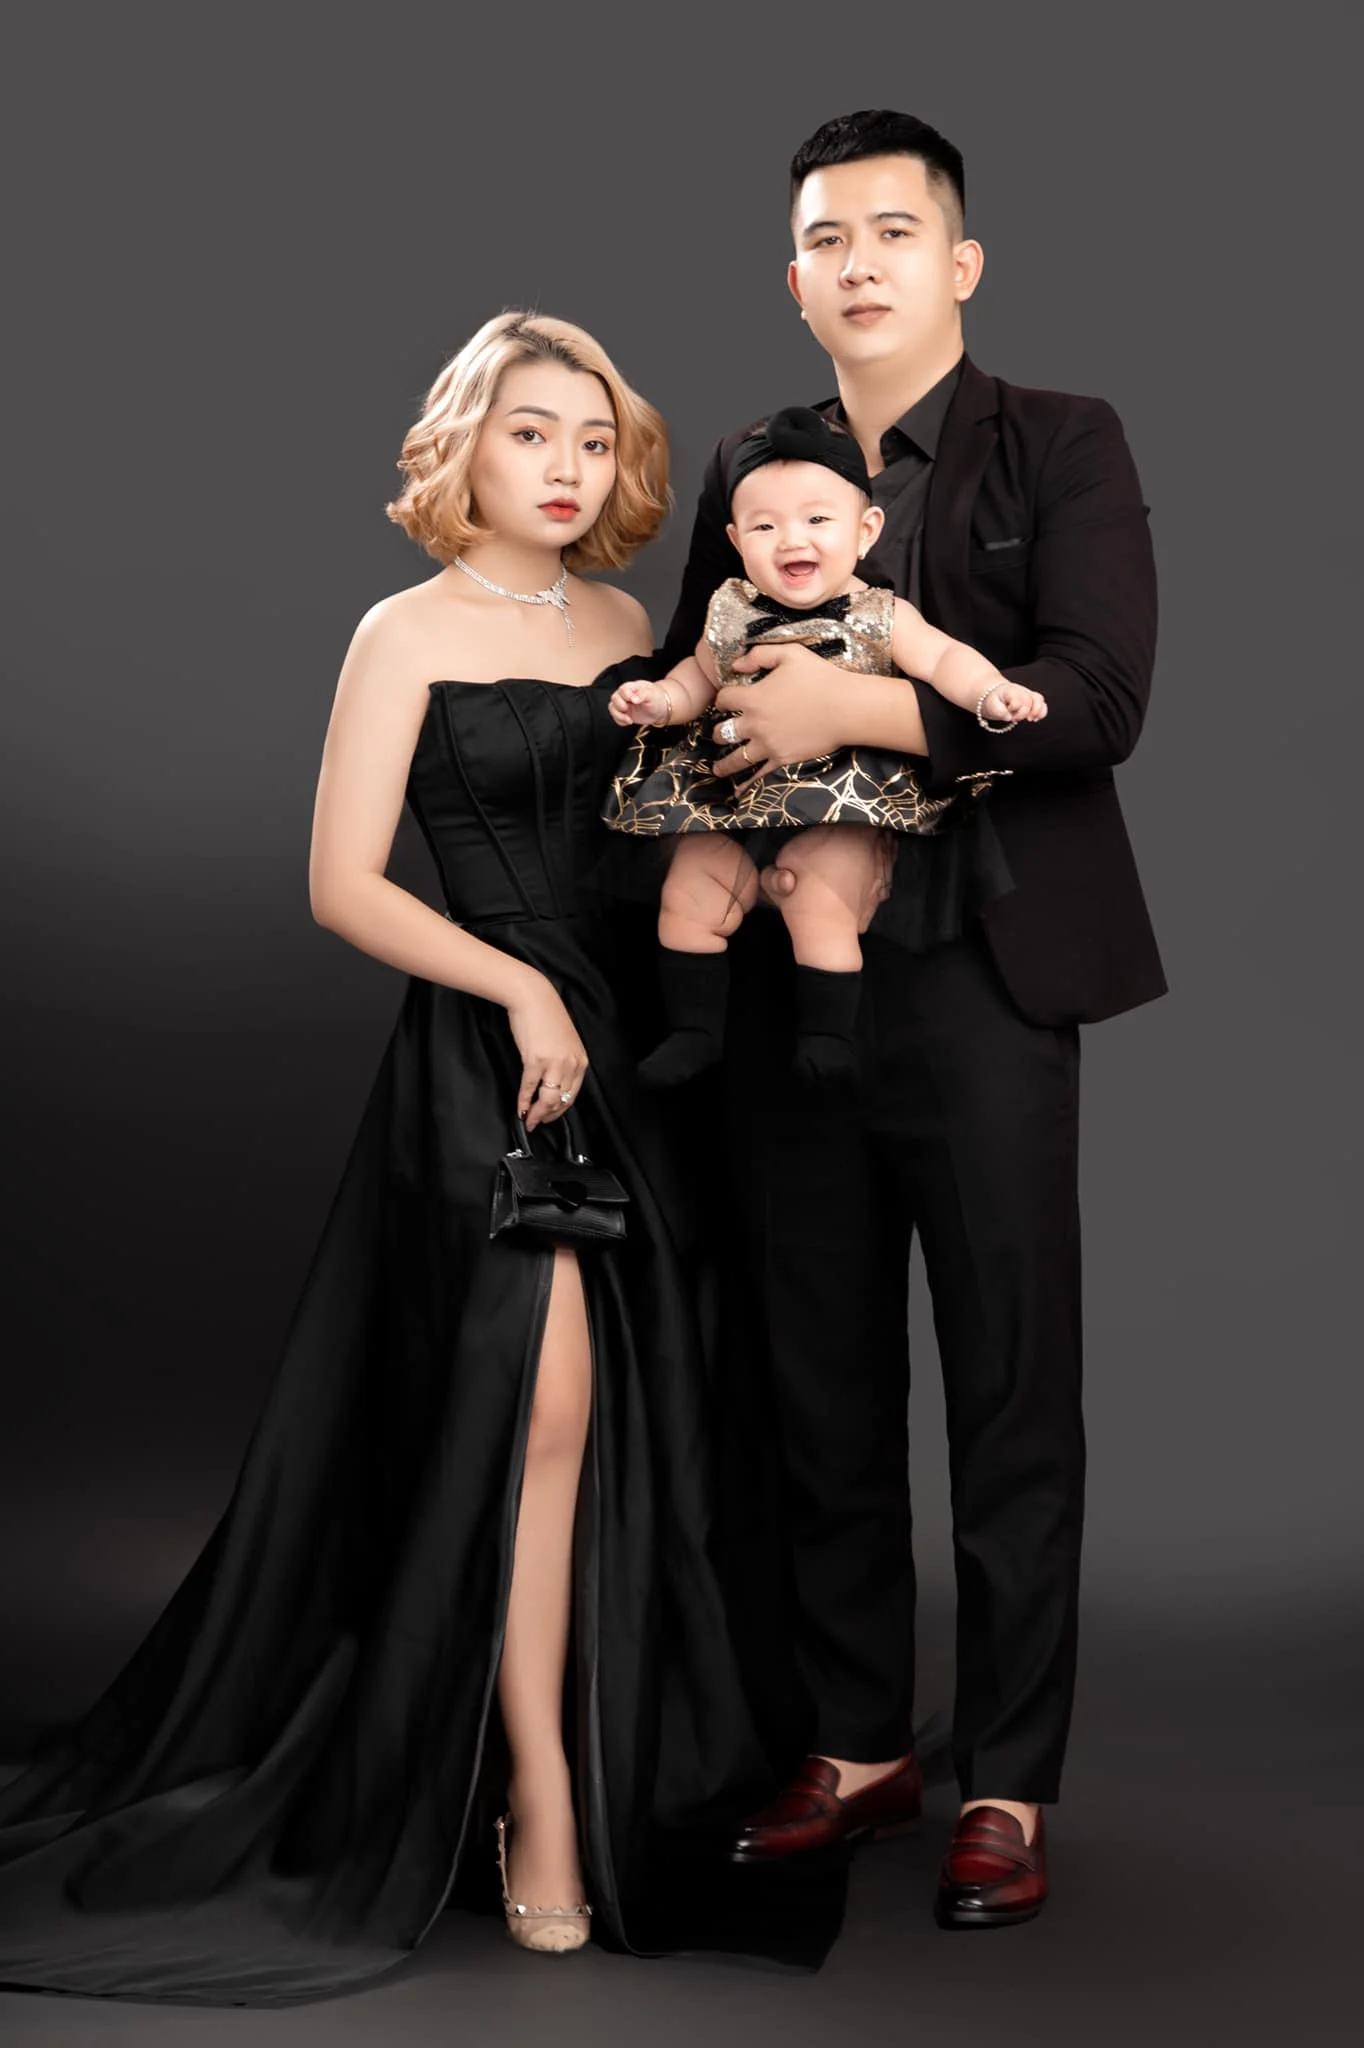 Anh gia dinh 4 1 - 35 cách tạo dáng chụp ảnh gia đình 3 người đẹp nhất - HThao Studio